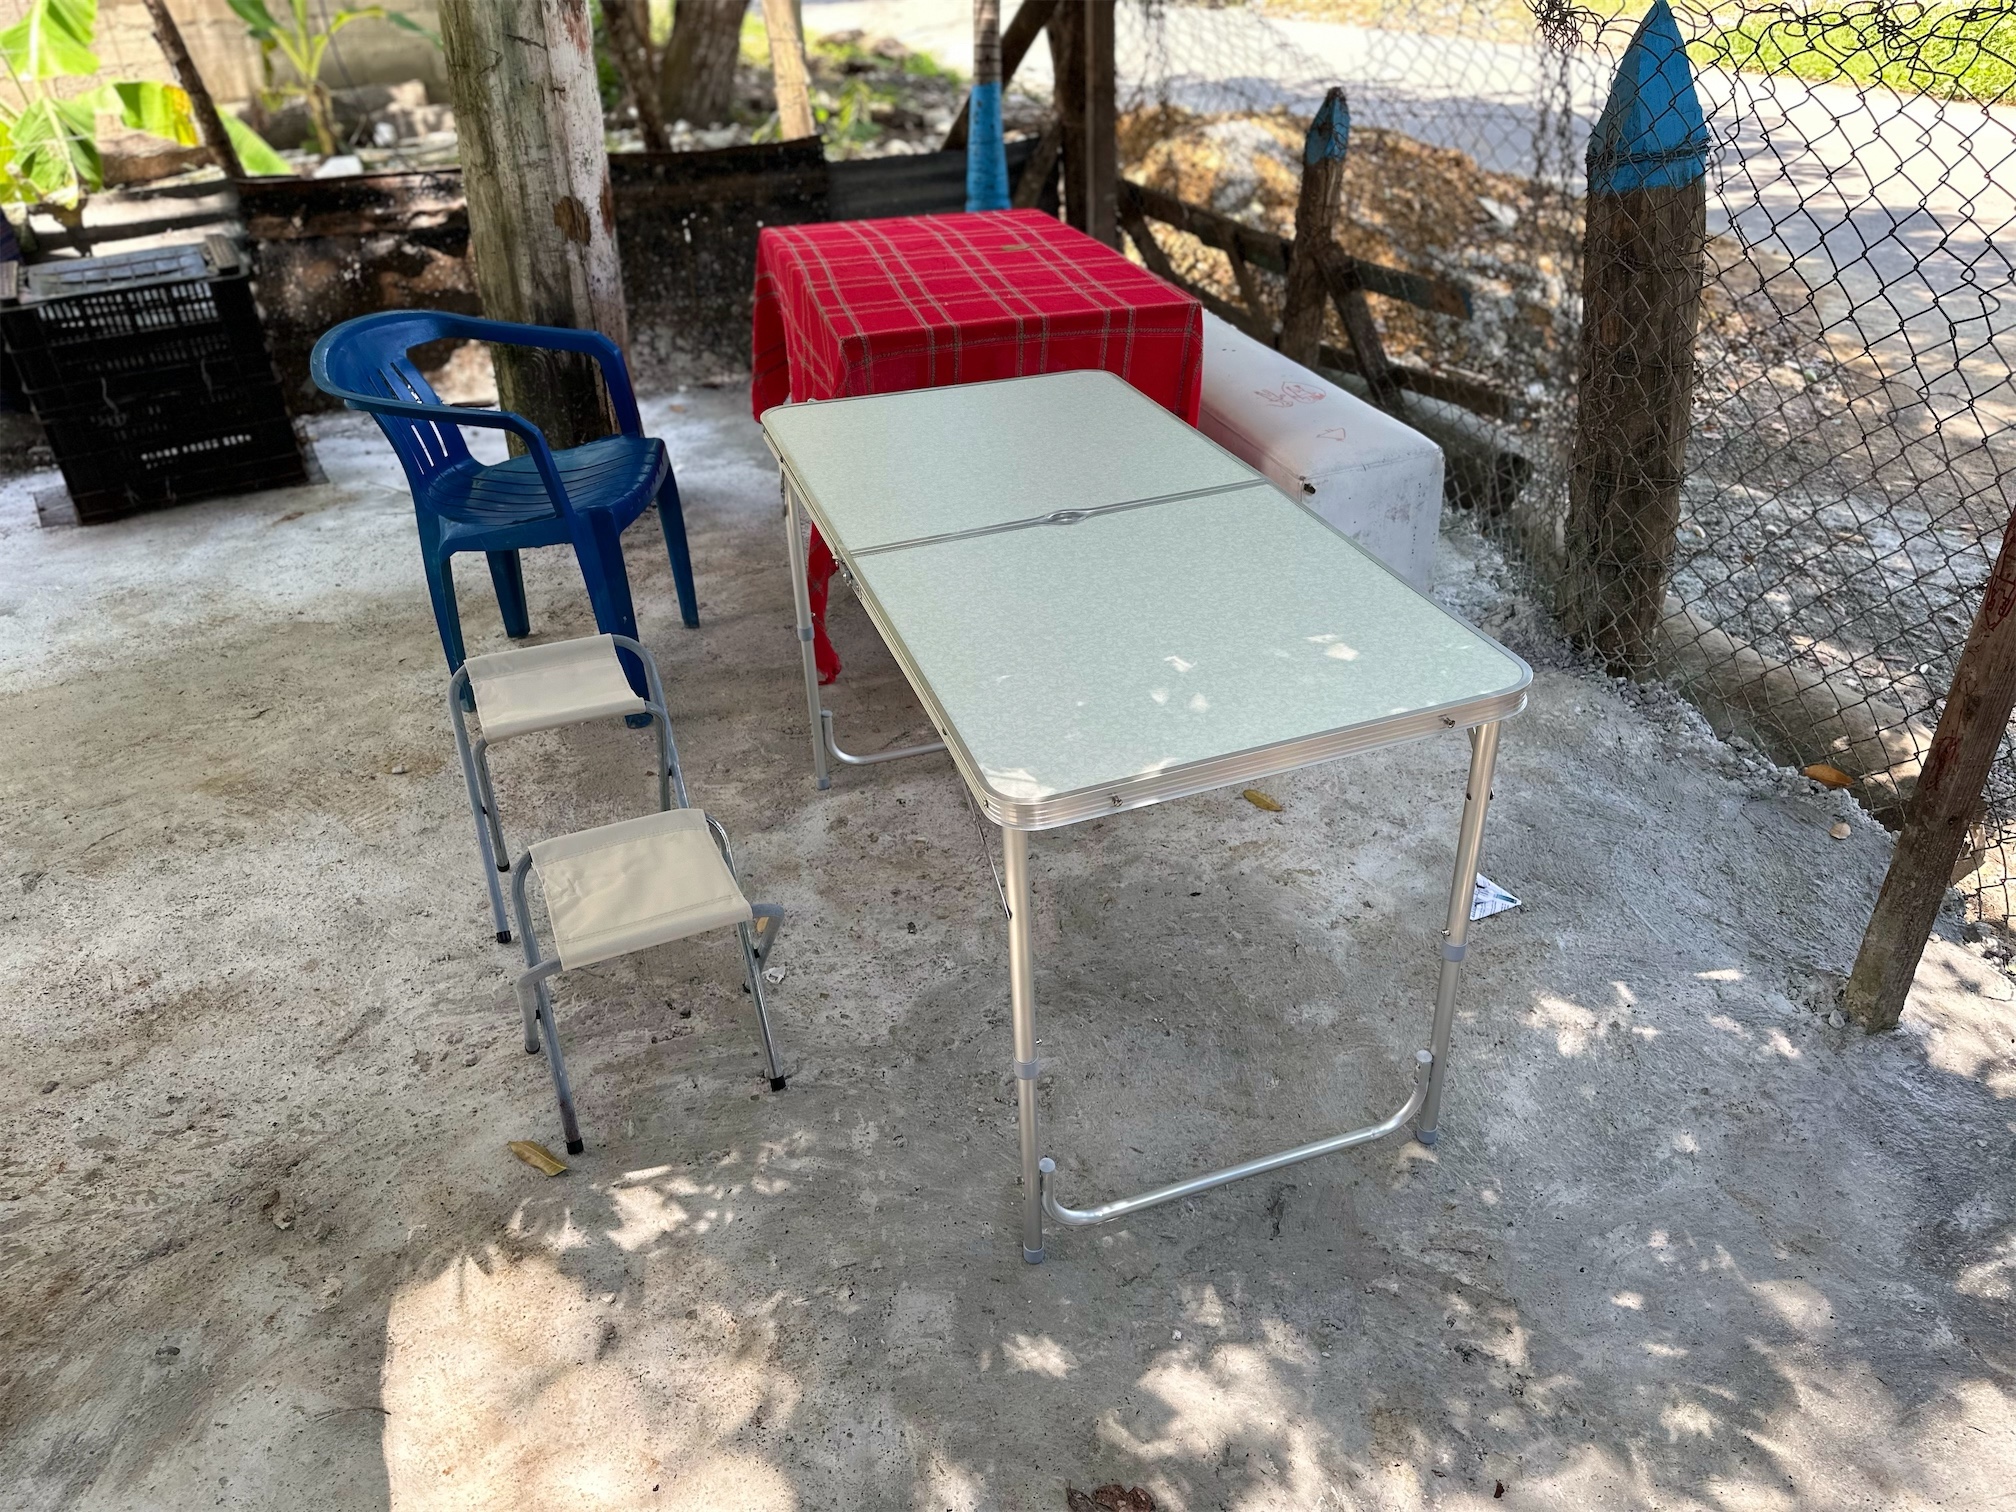 herramientas, jardines y exterior - Juego de mesa plegable para el exterior con 4 sillas blanquito super resistente. 5